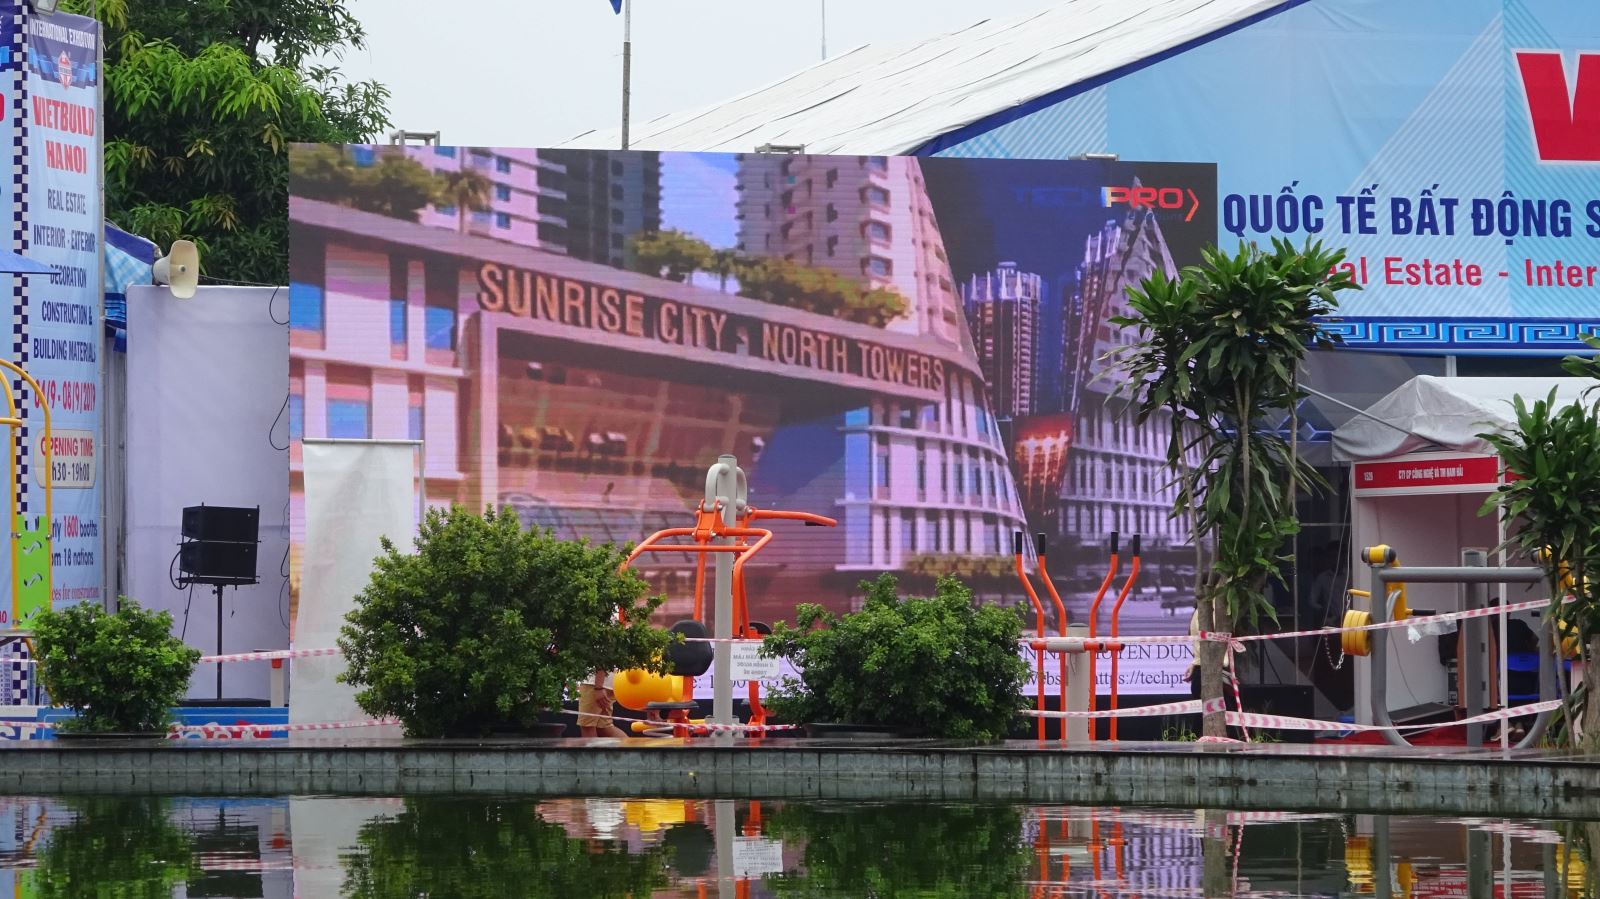 TECHPRO triển lãm Vietbuild tại Hà Nội 2019